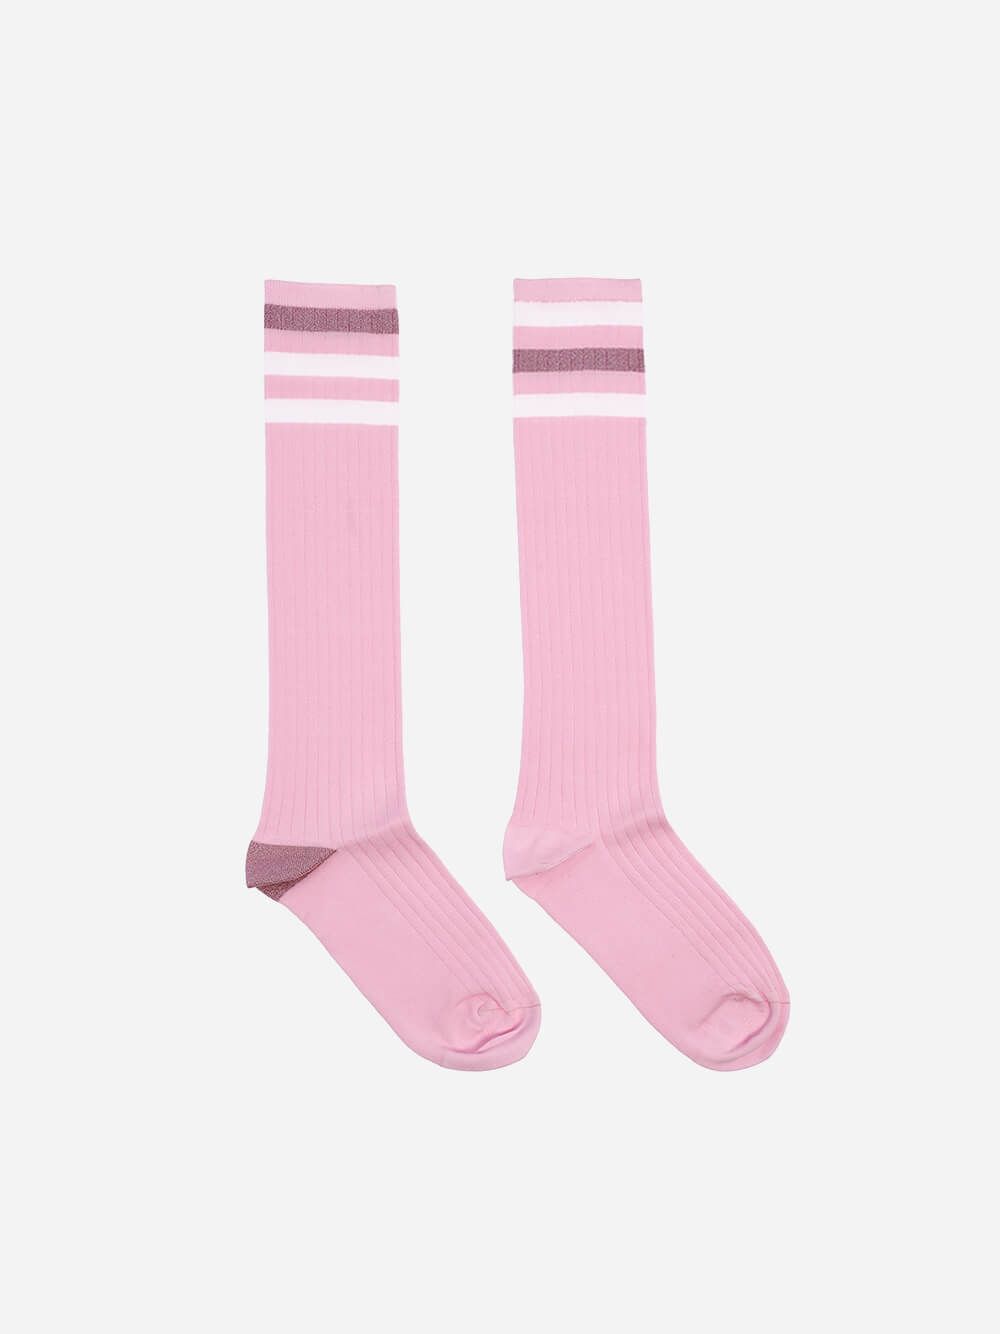 Old School Pink Lurex Socks | Lolo Carolo